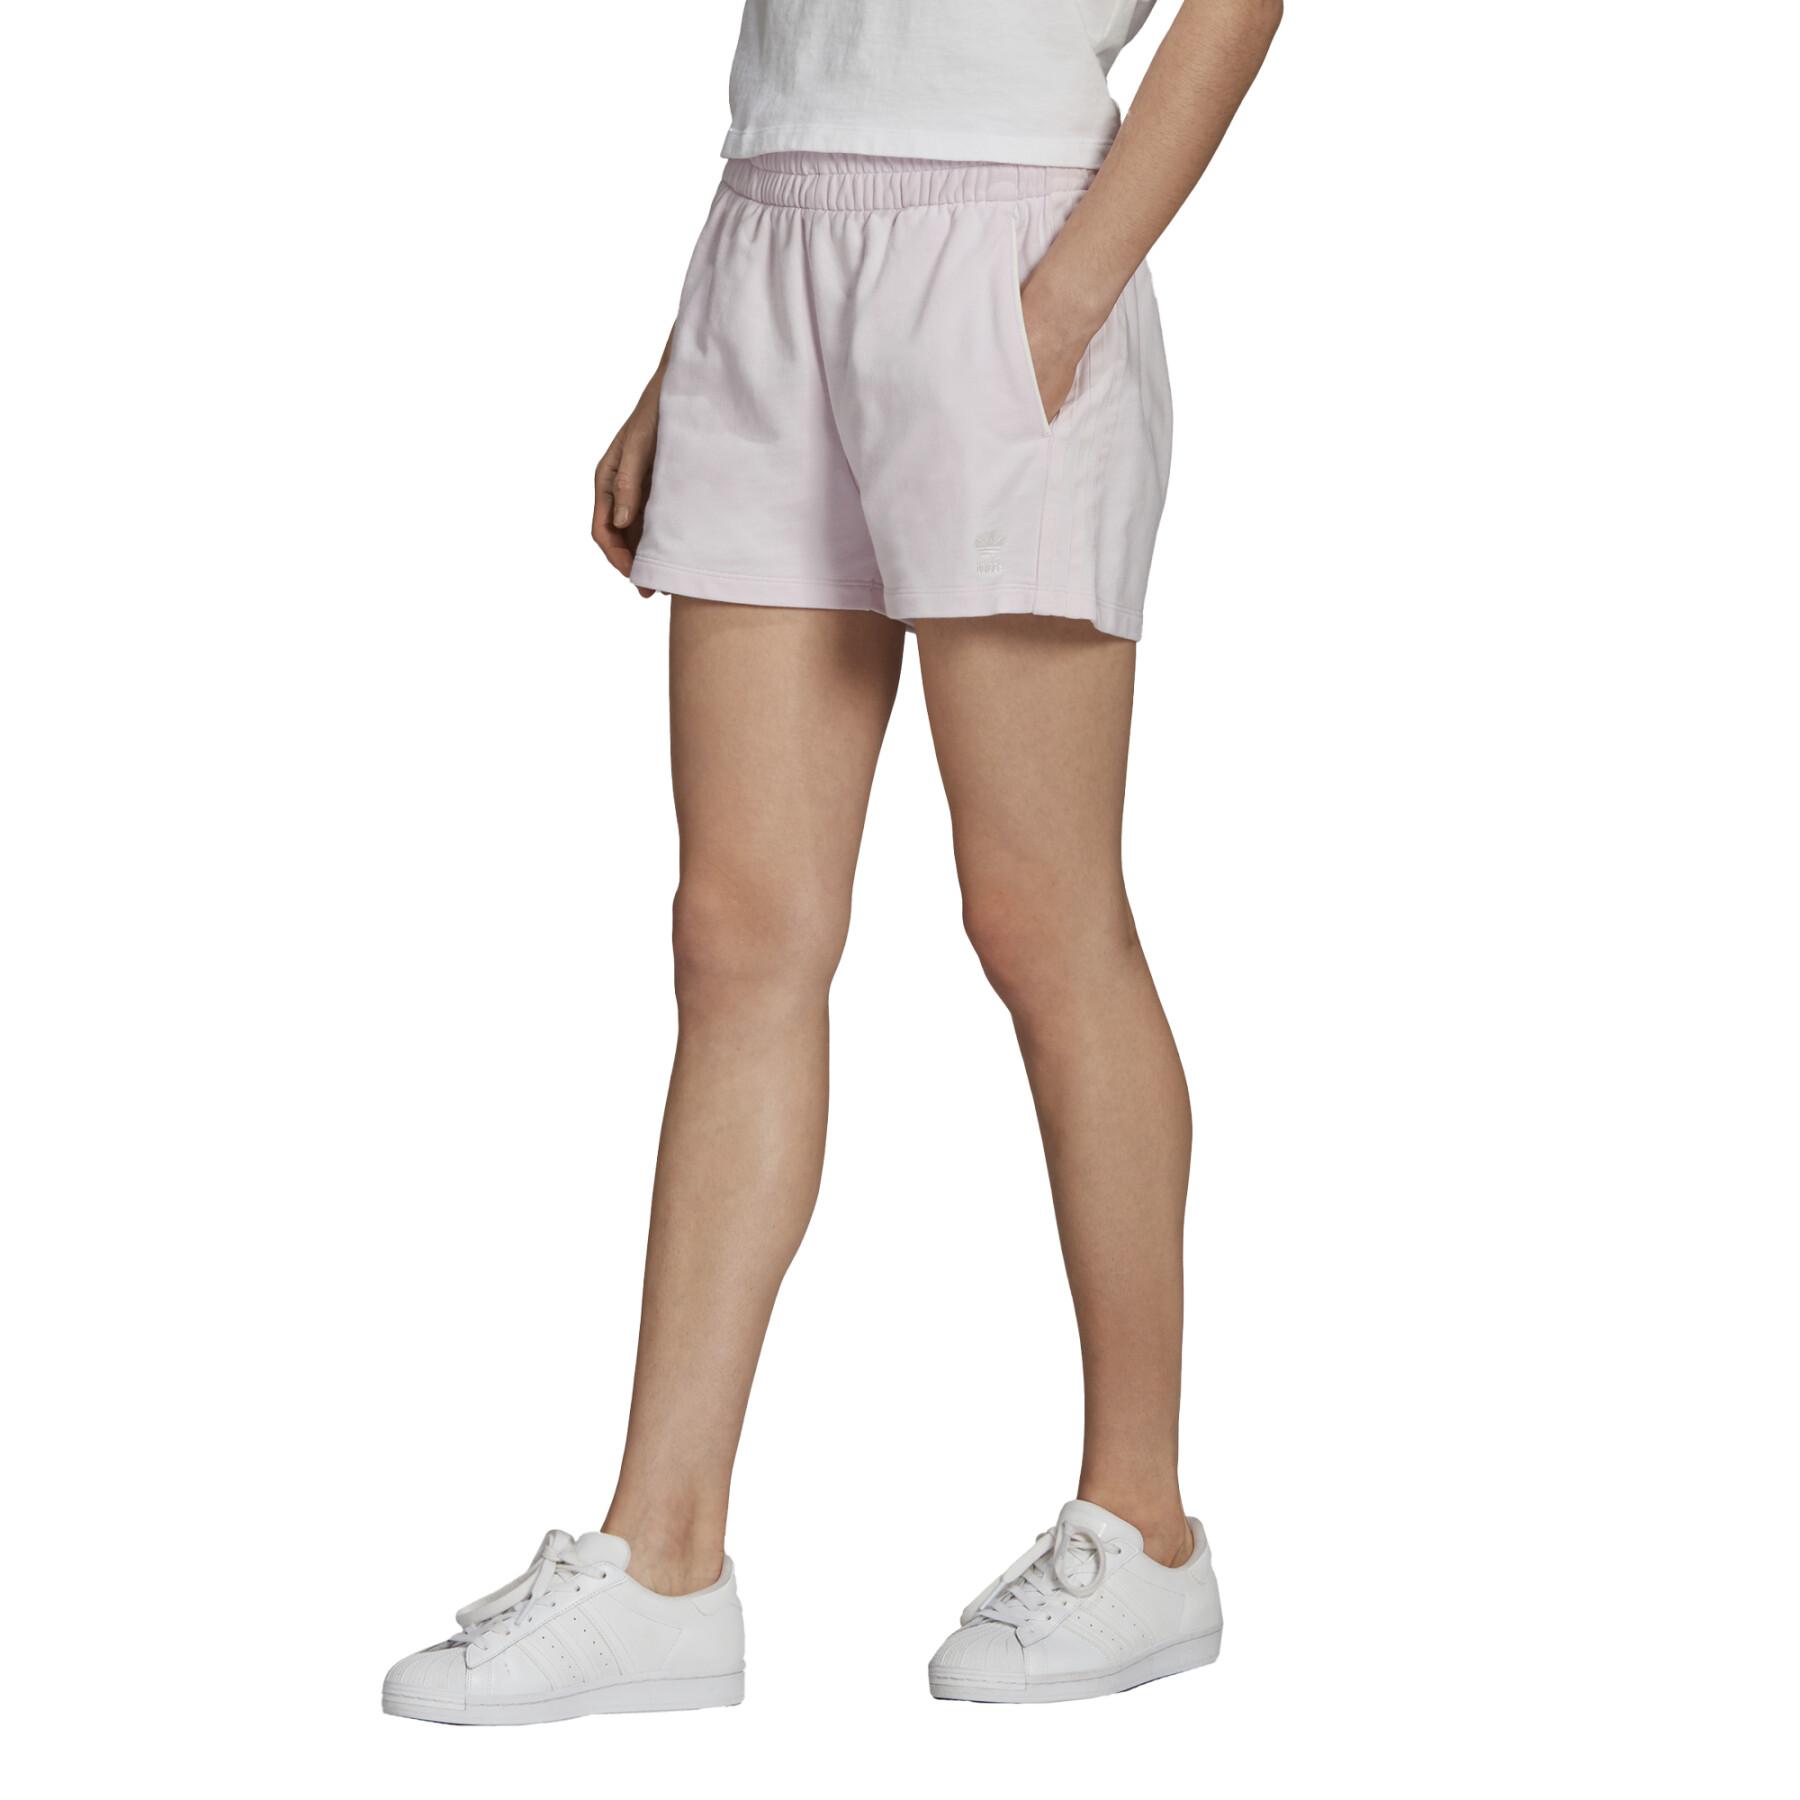 Calções para mulheres adidas Originals Tennis Luxe 3-Stripes